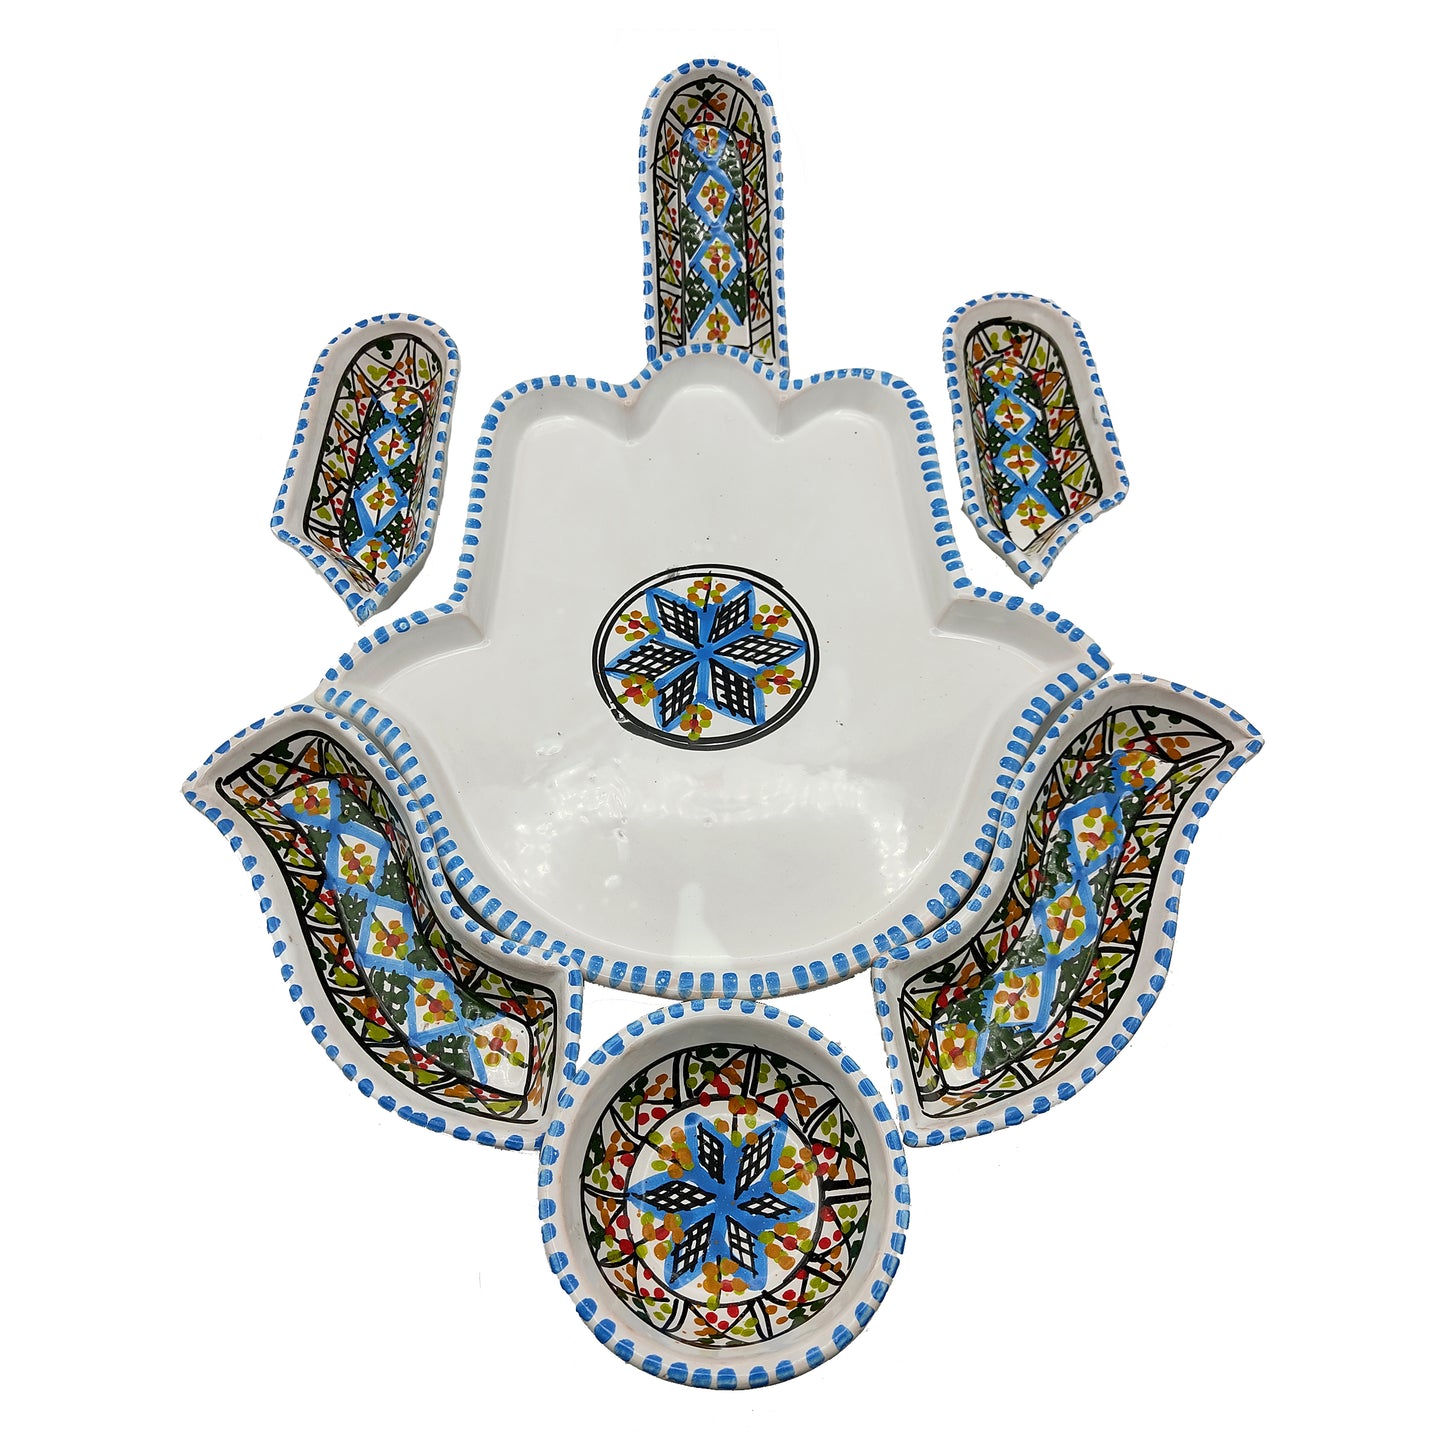 Antipastiera Piatto Etnico Ceramica Terracotta Tunisina Marocchina 2611201215